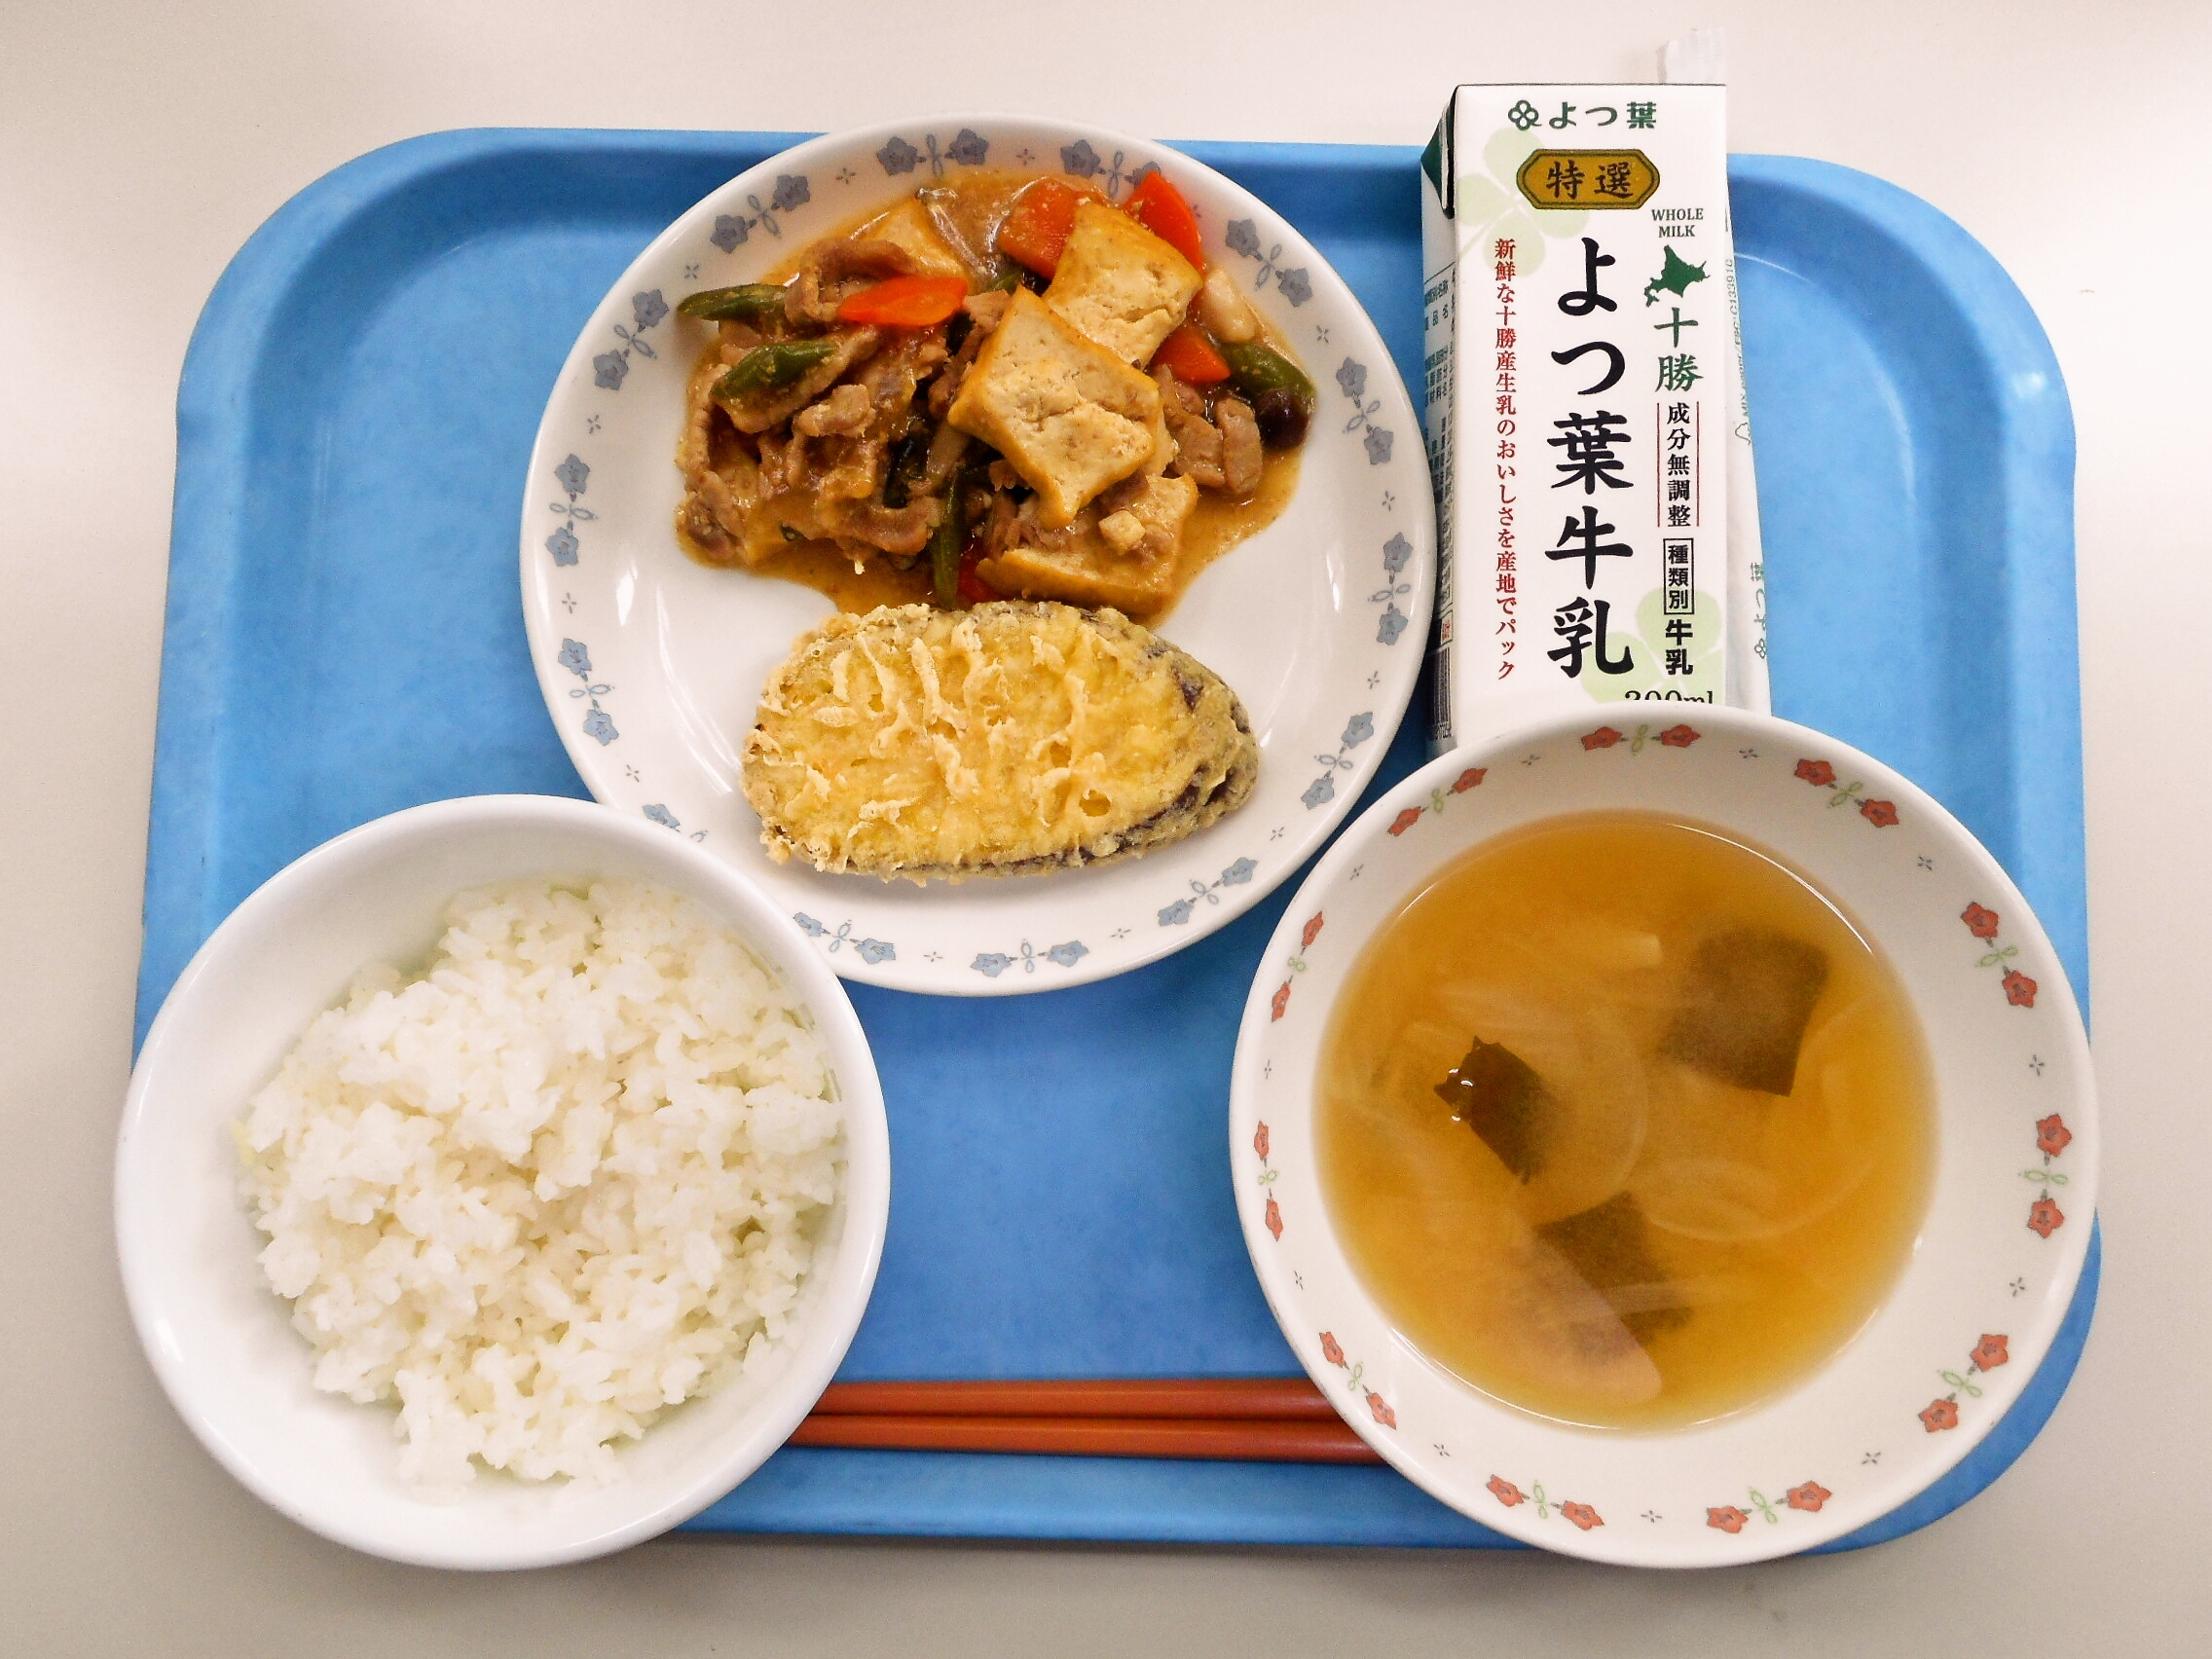 ごはん、みそ汁（玉ねぎ・わかめ）、さつまいも天ぷら、肉豆腐、牛乳